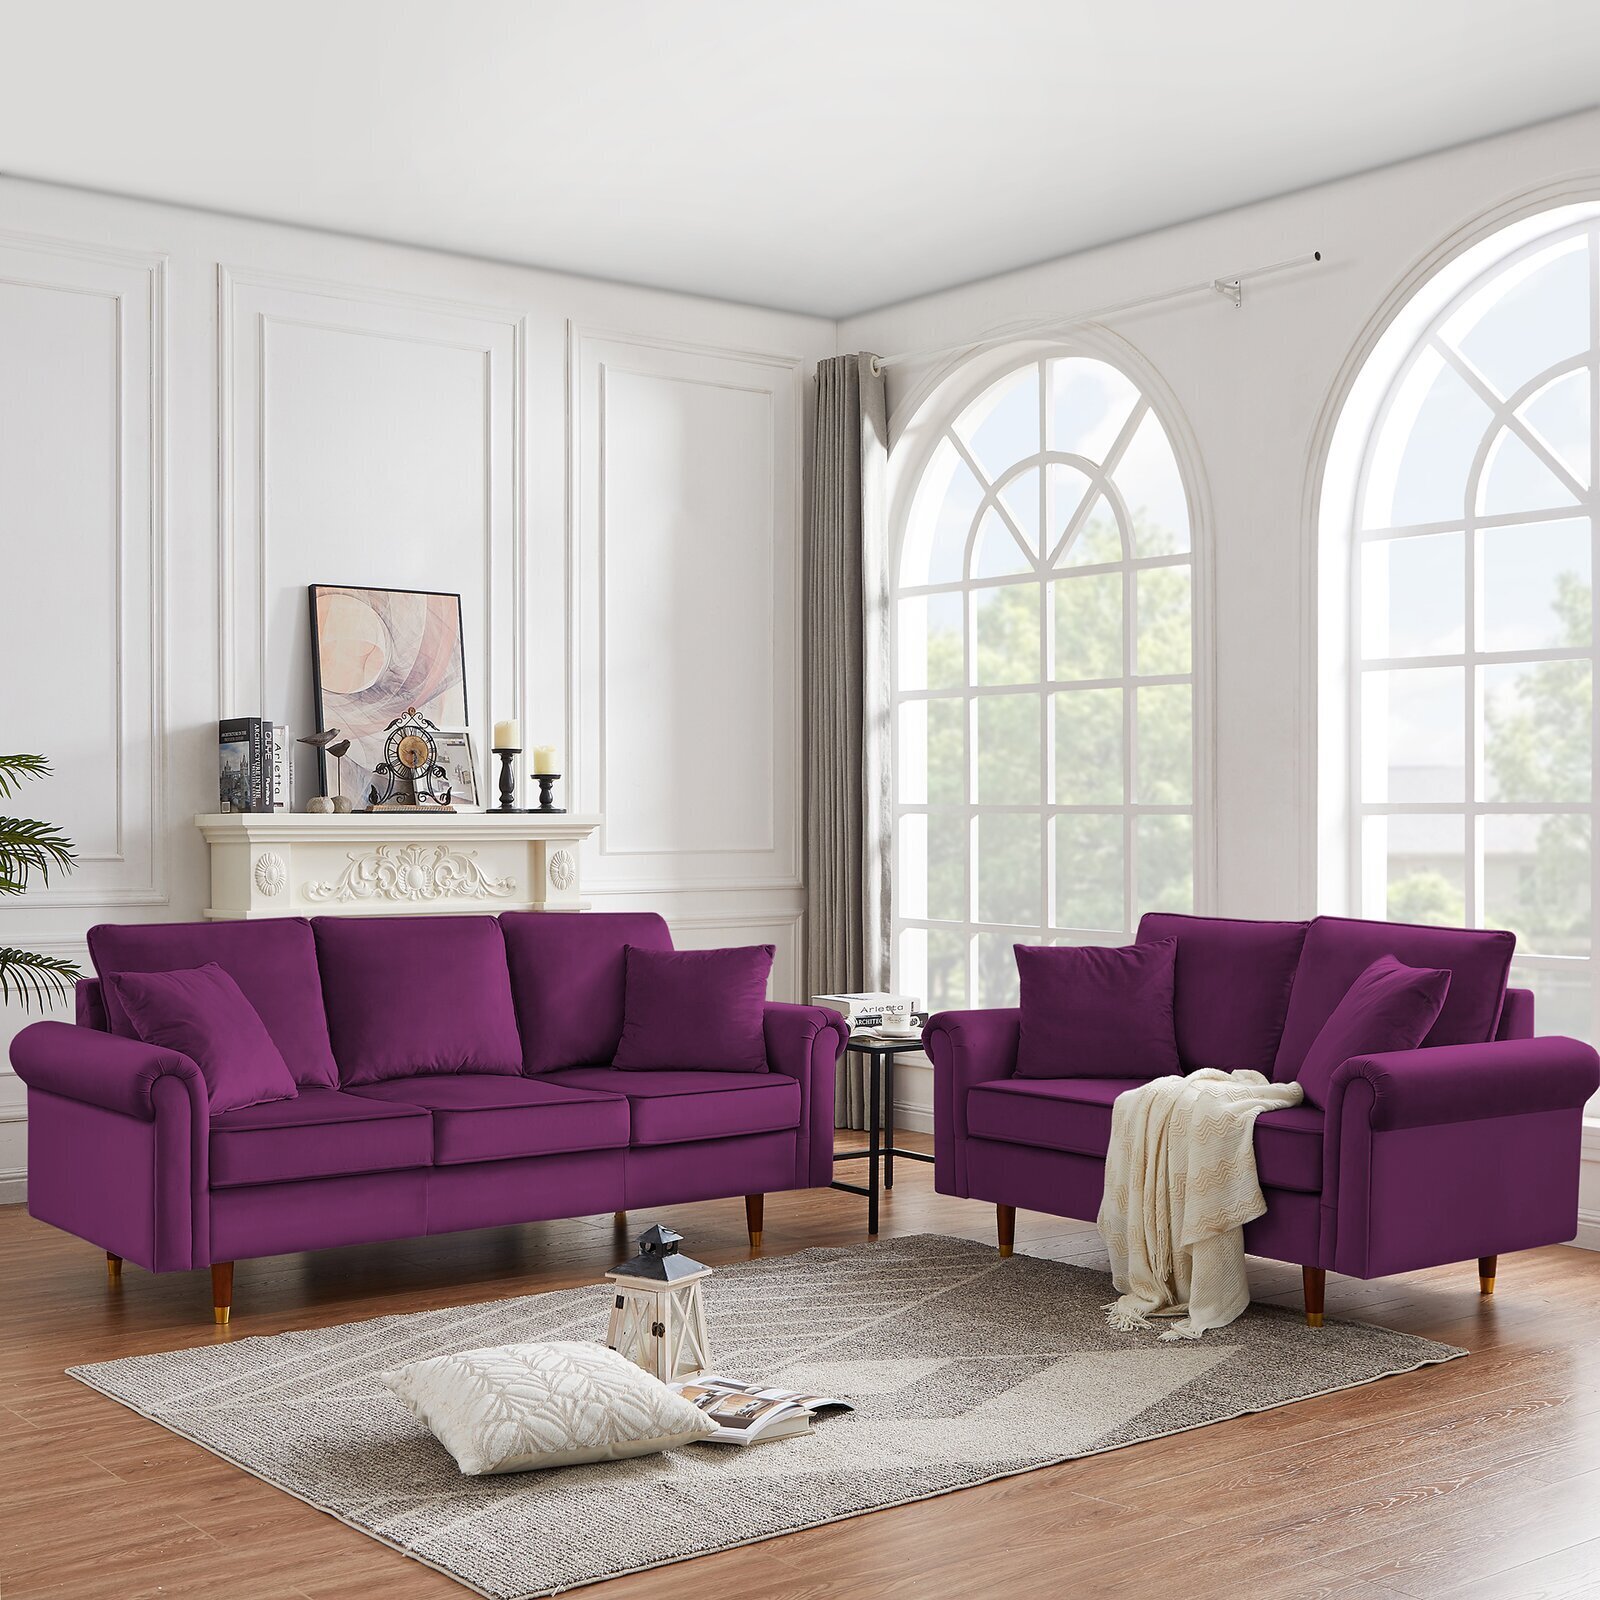 Velvet purple sofa set